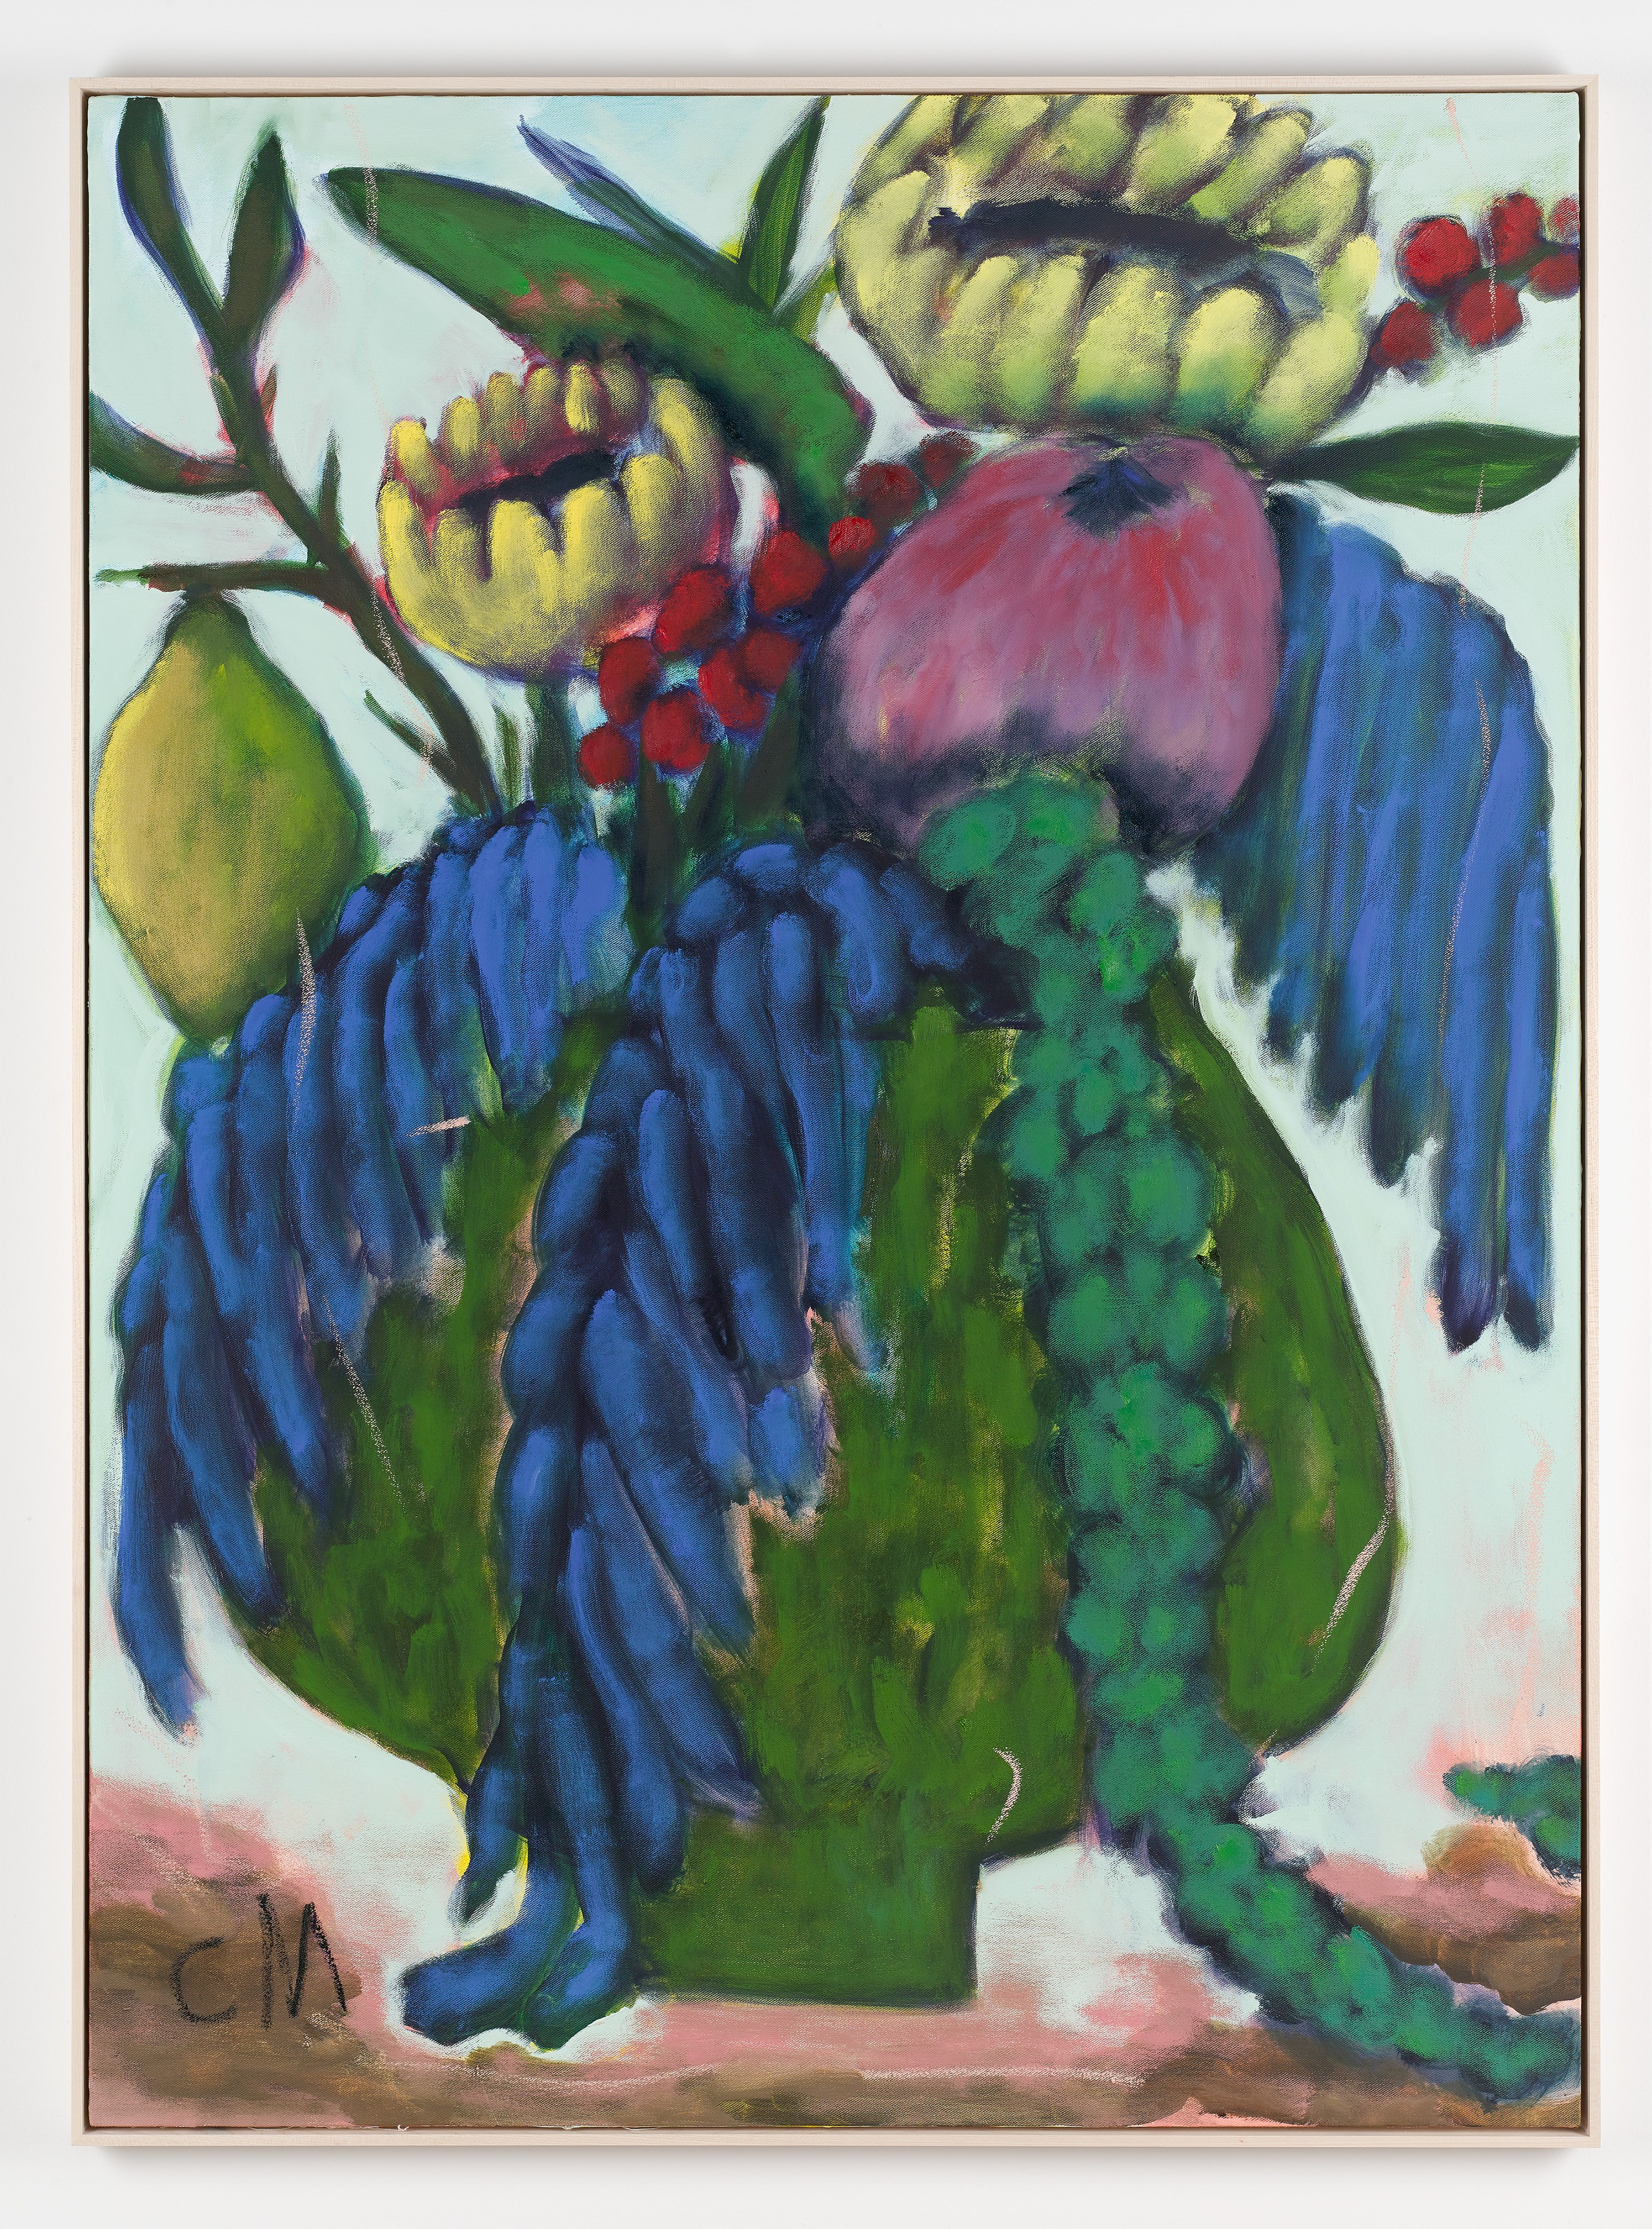 Conny MaierLago Maggiore, 2022Oil, pigment, oil stick on canvas150 x 110 cm59 1/2 x 43 1/2 in